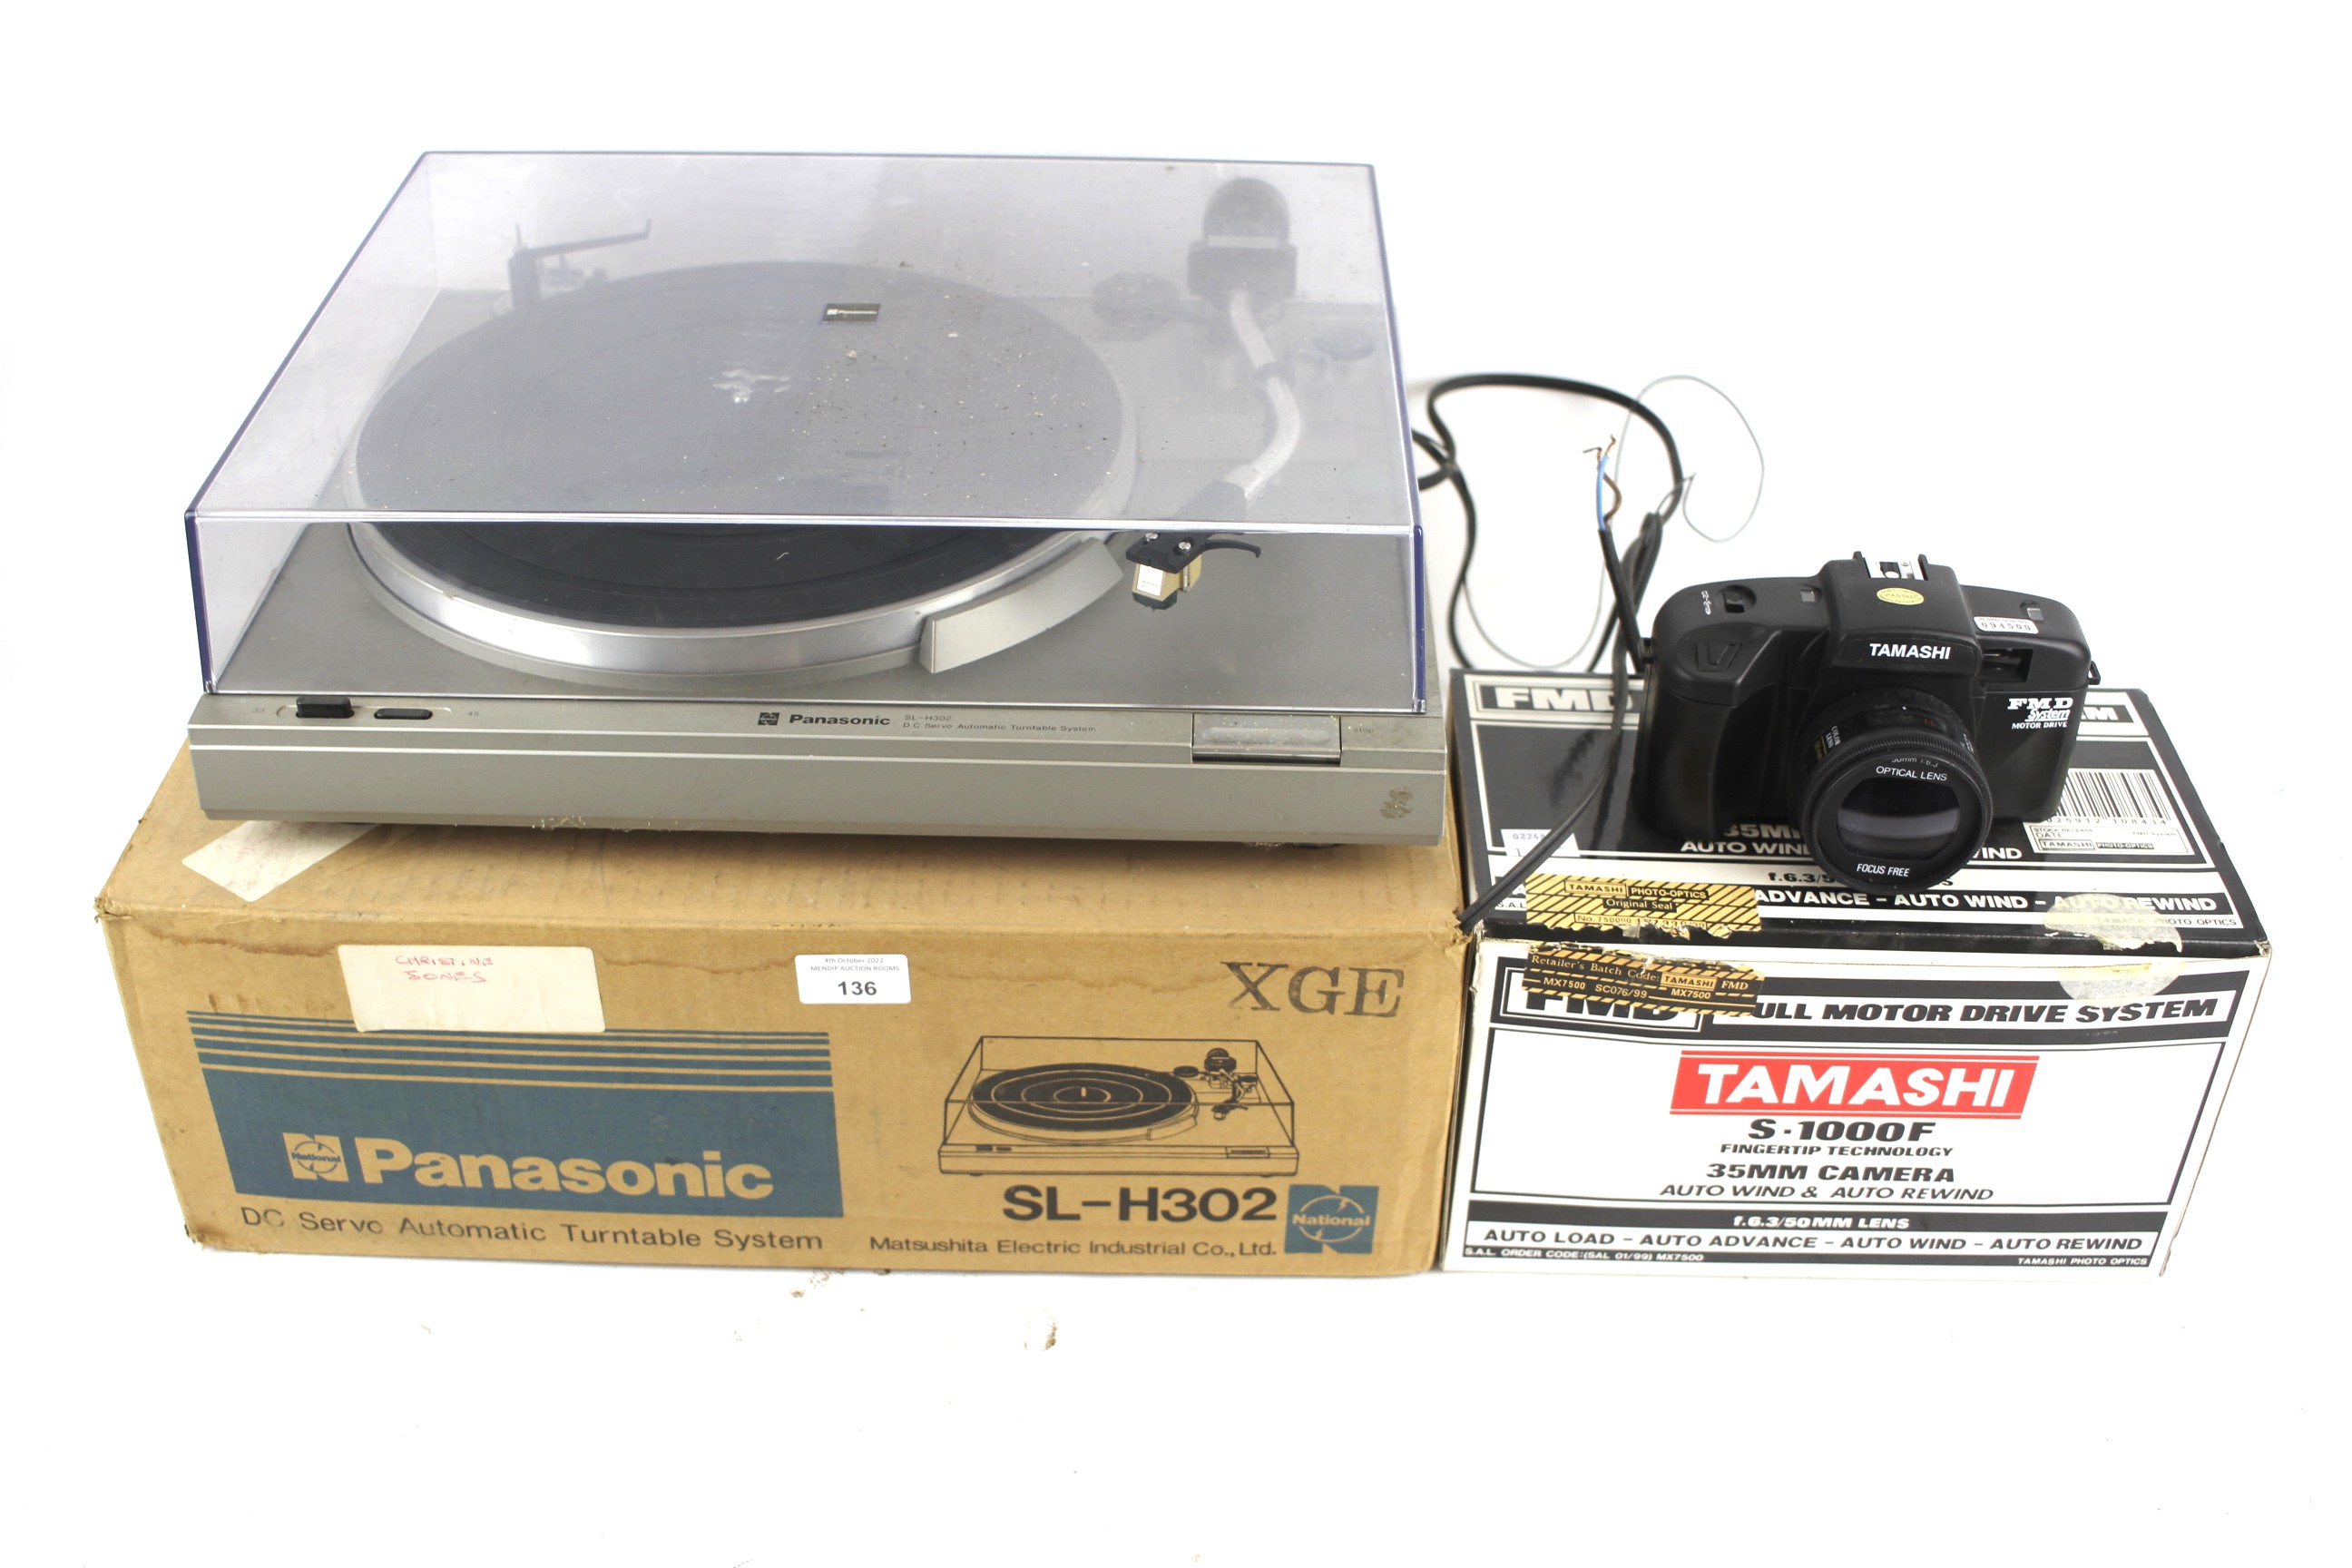 A Panasonic Sl-H302 record player and a Tamashi 35mm camera. Both boxed.